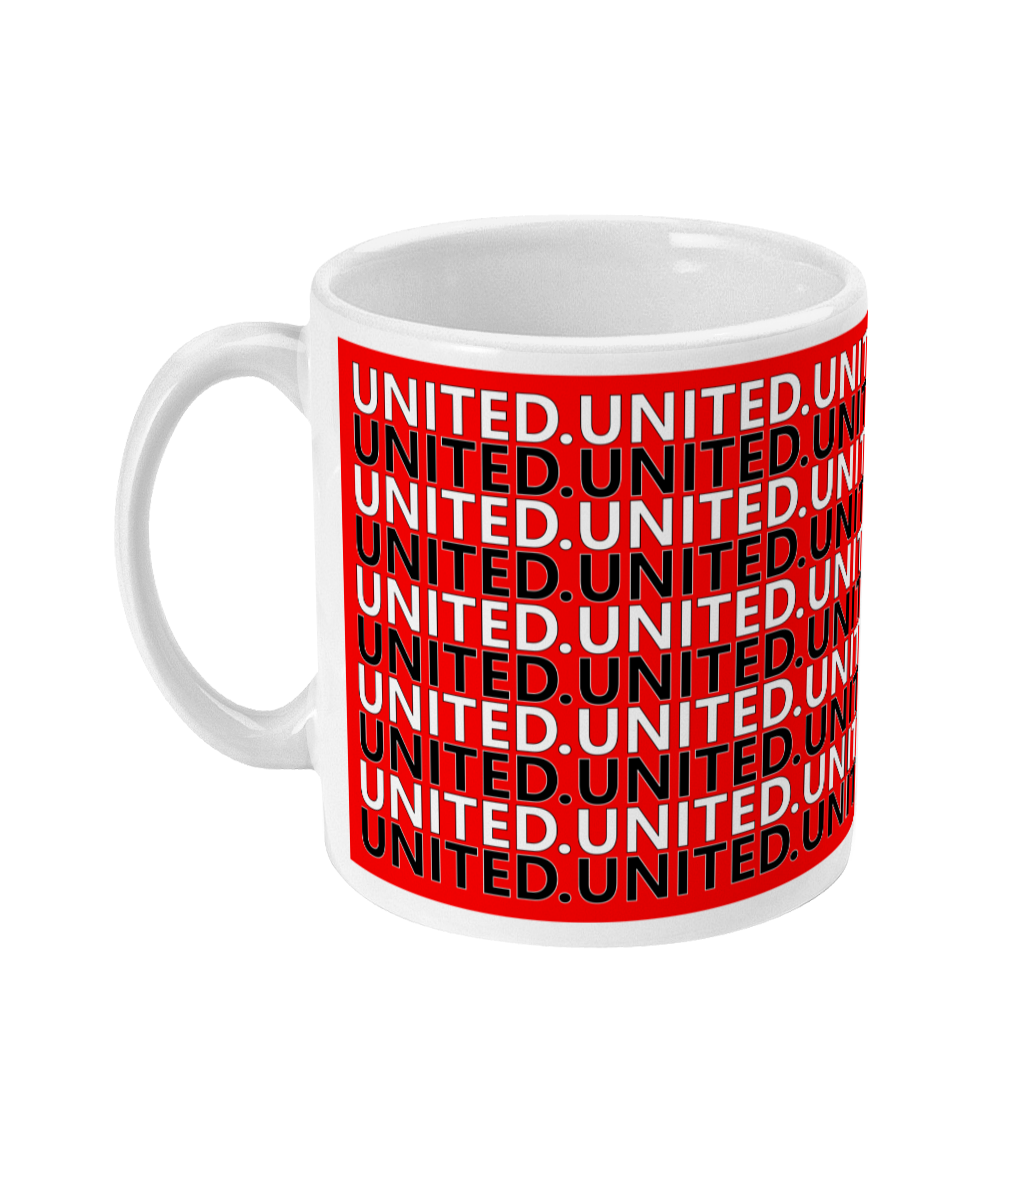 United, United, United, United, United ... - Mug